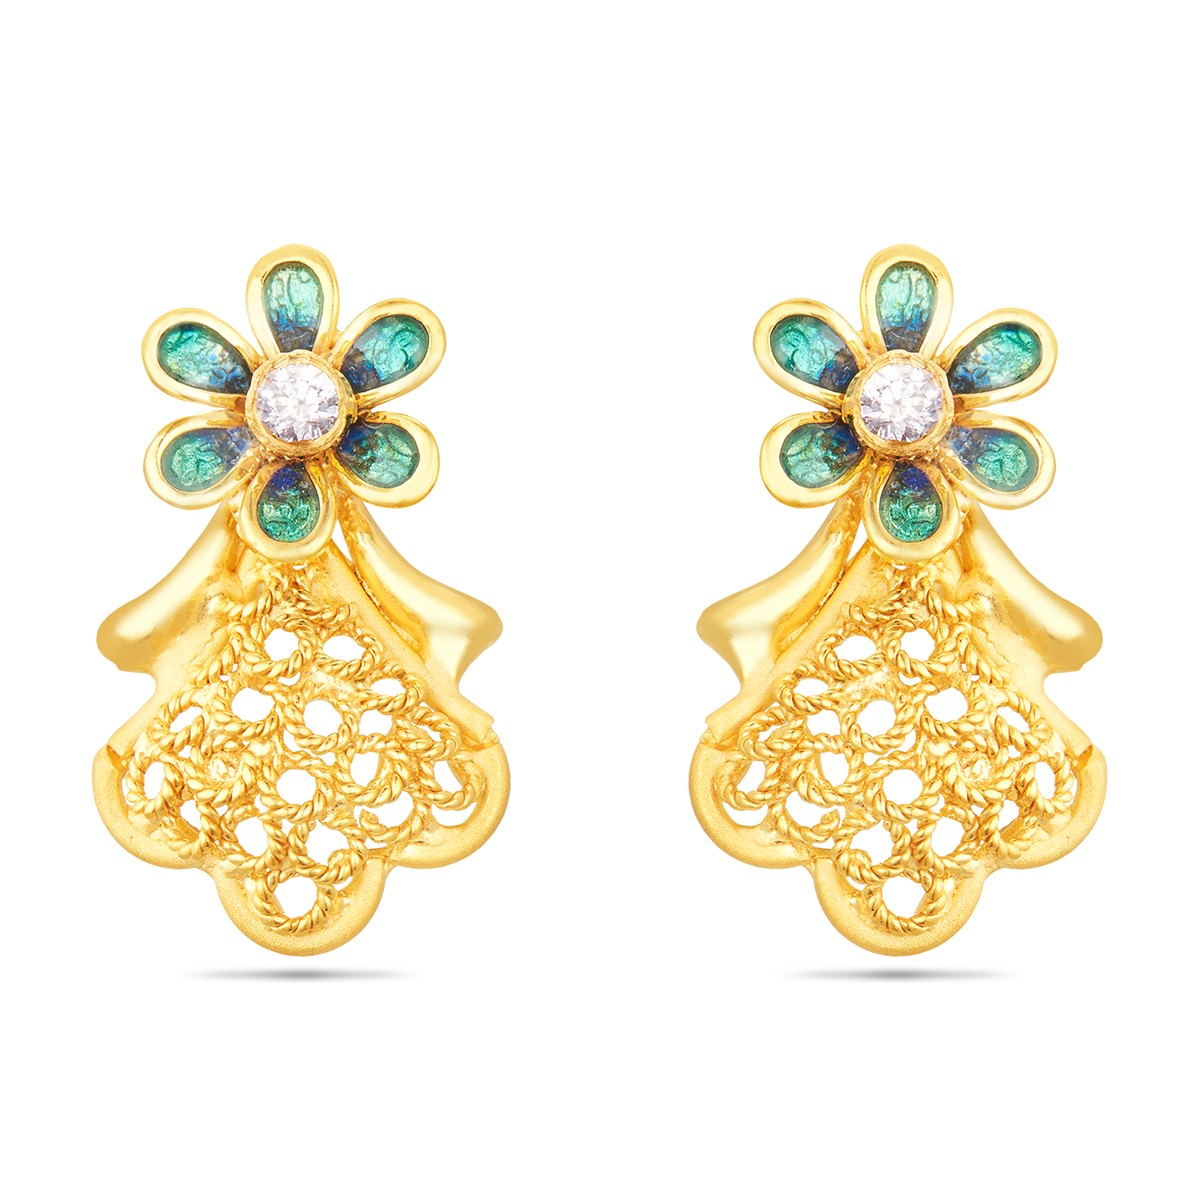 4 gram gold earrings designs